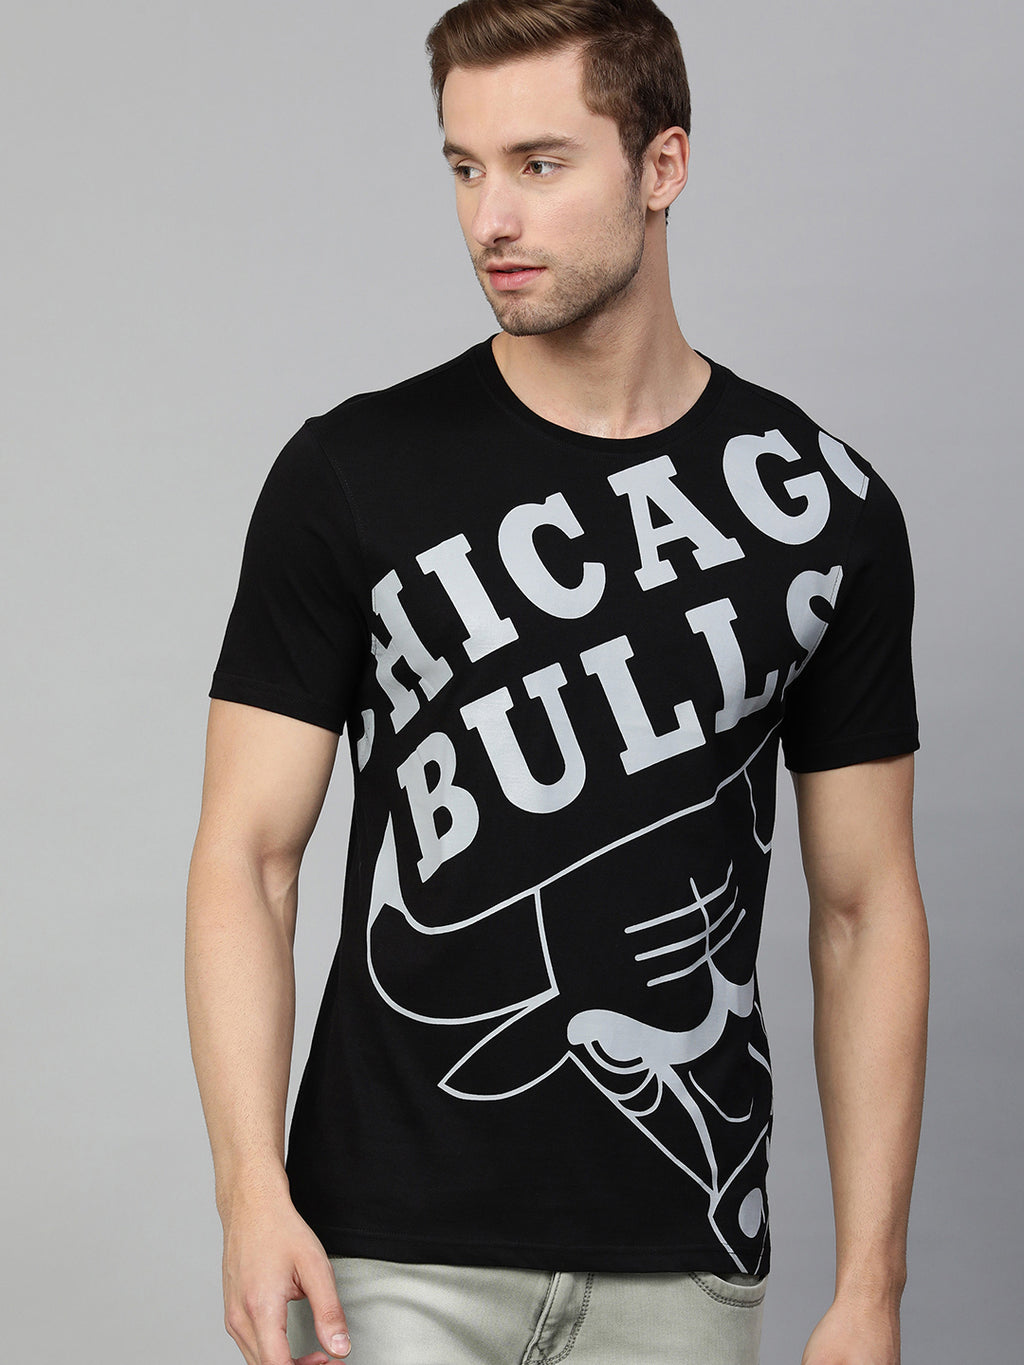 Chicago Bulls: Oversized Logo T-Shirt S / Black